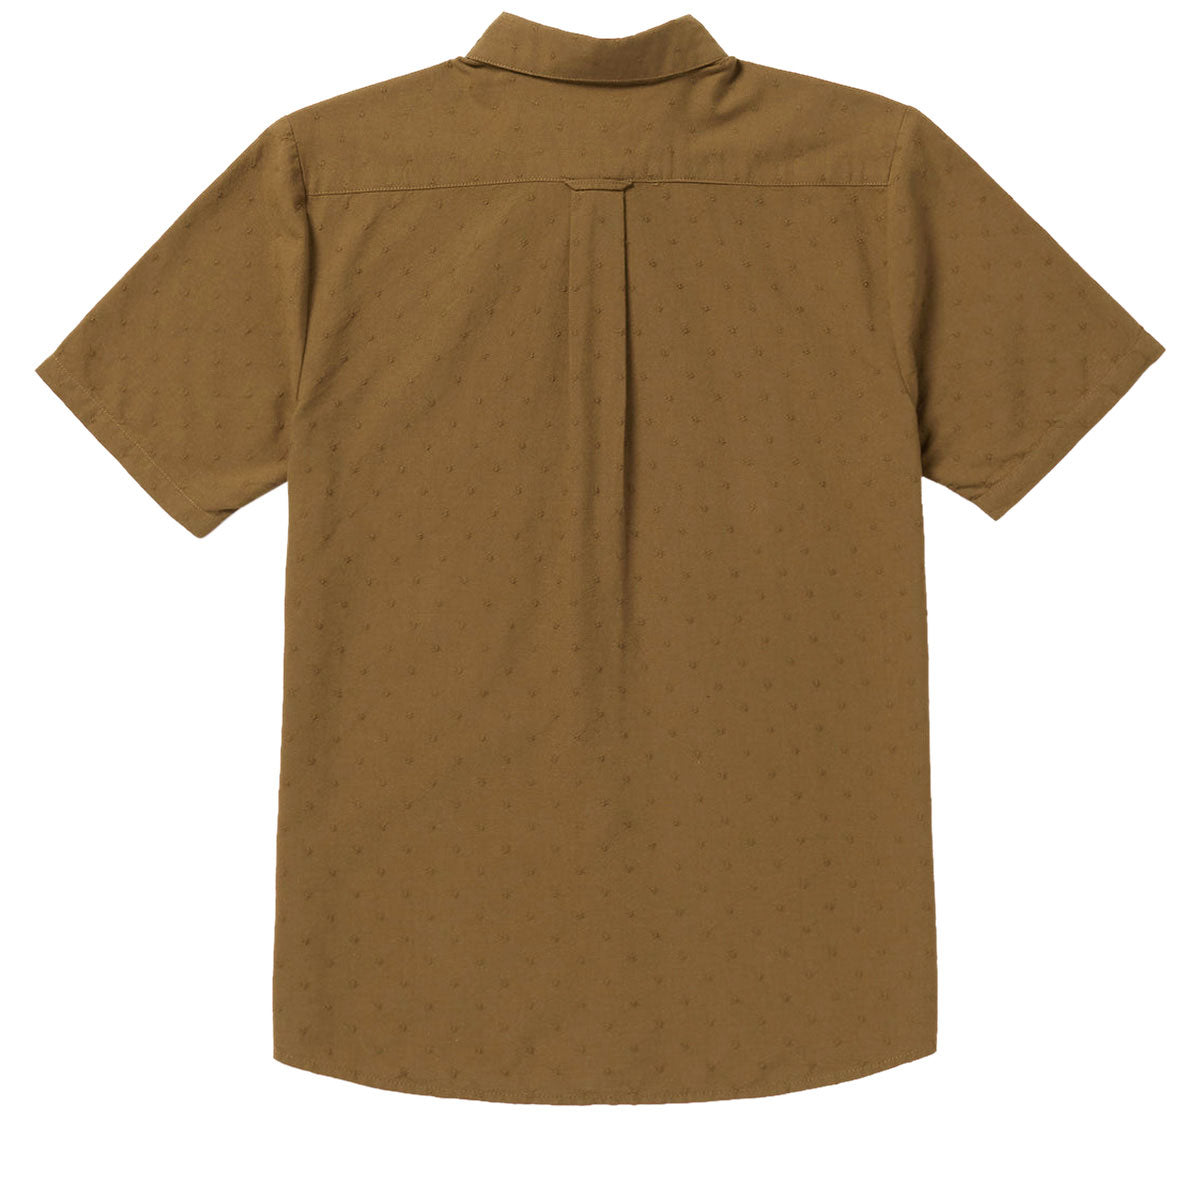 Volcom Date Knight Shirt - Mud image 2